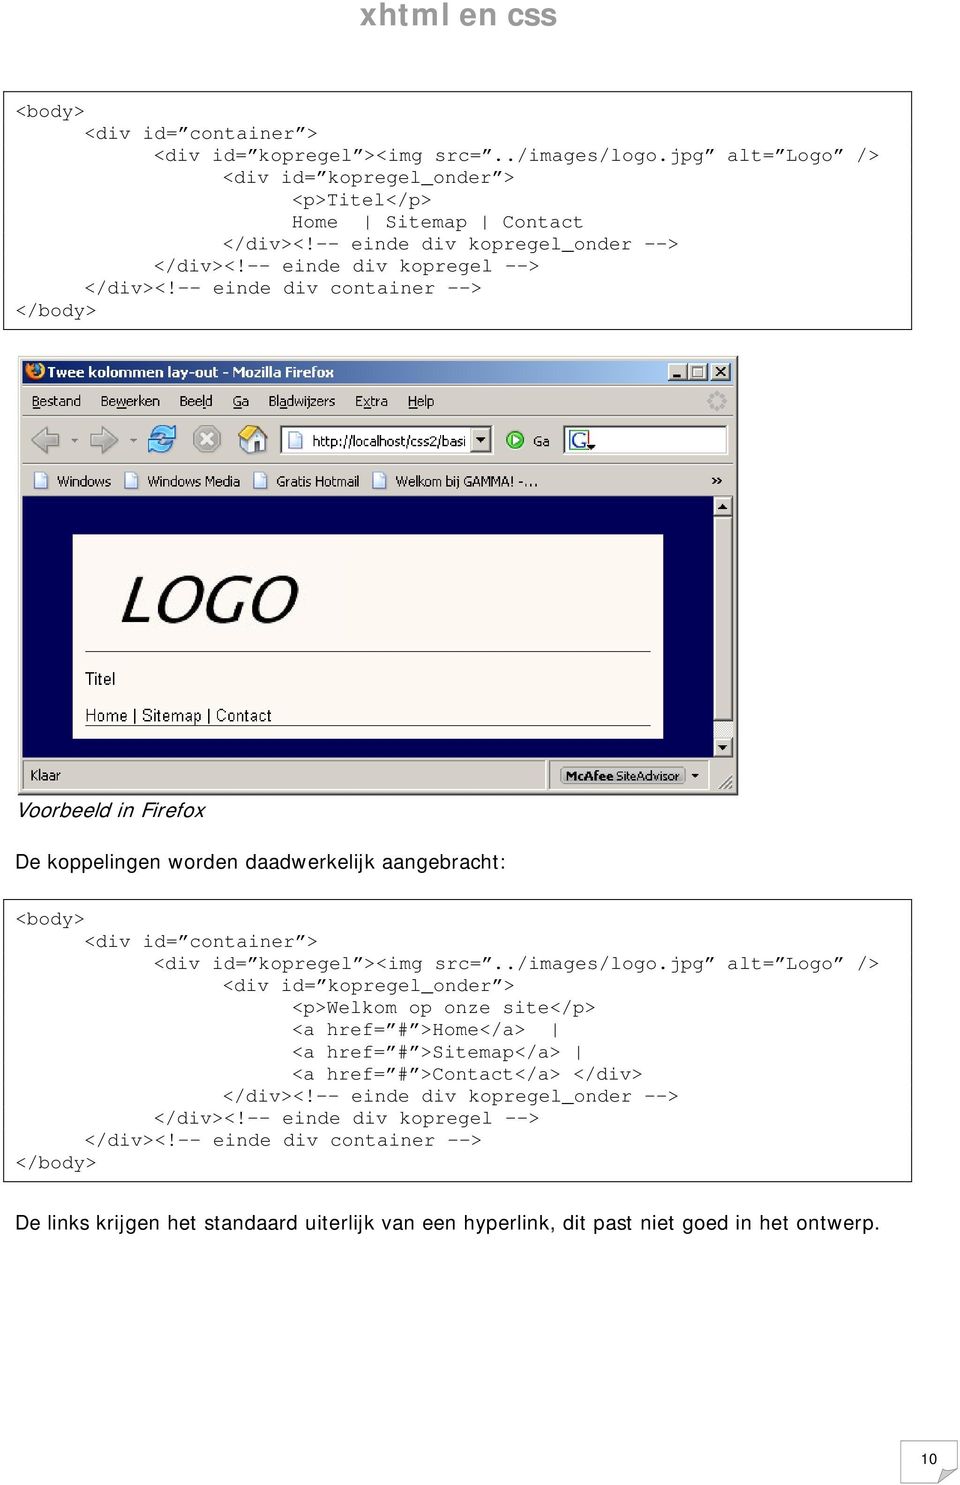 -- einde div container --> </body> Voorbeeld in Firefox De koppelingen worden daadwerkelijk aangebracht: <body> <div id= container > <div id= kopregel ><img src=../images/logo.